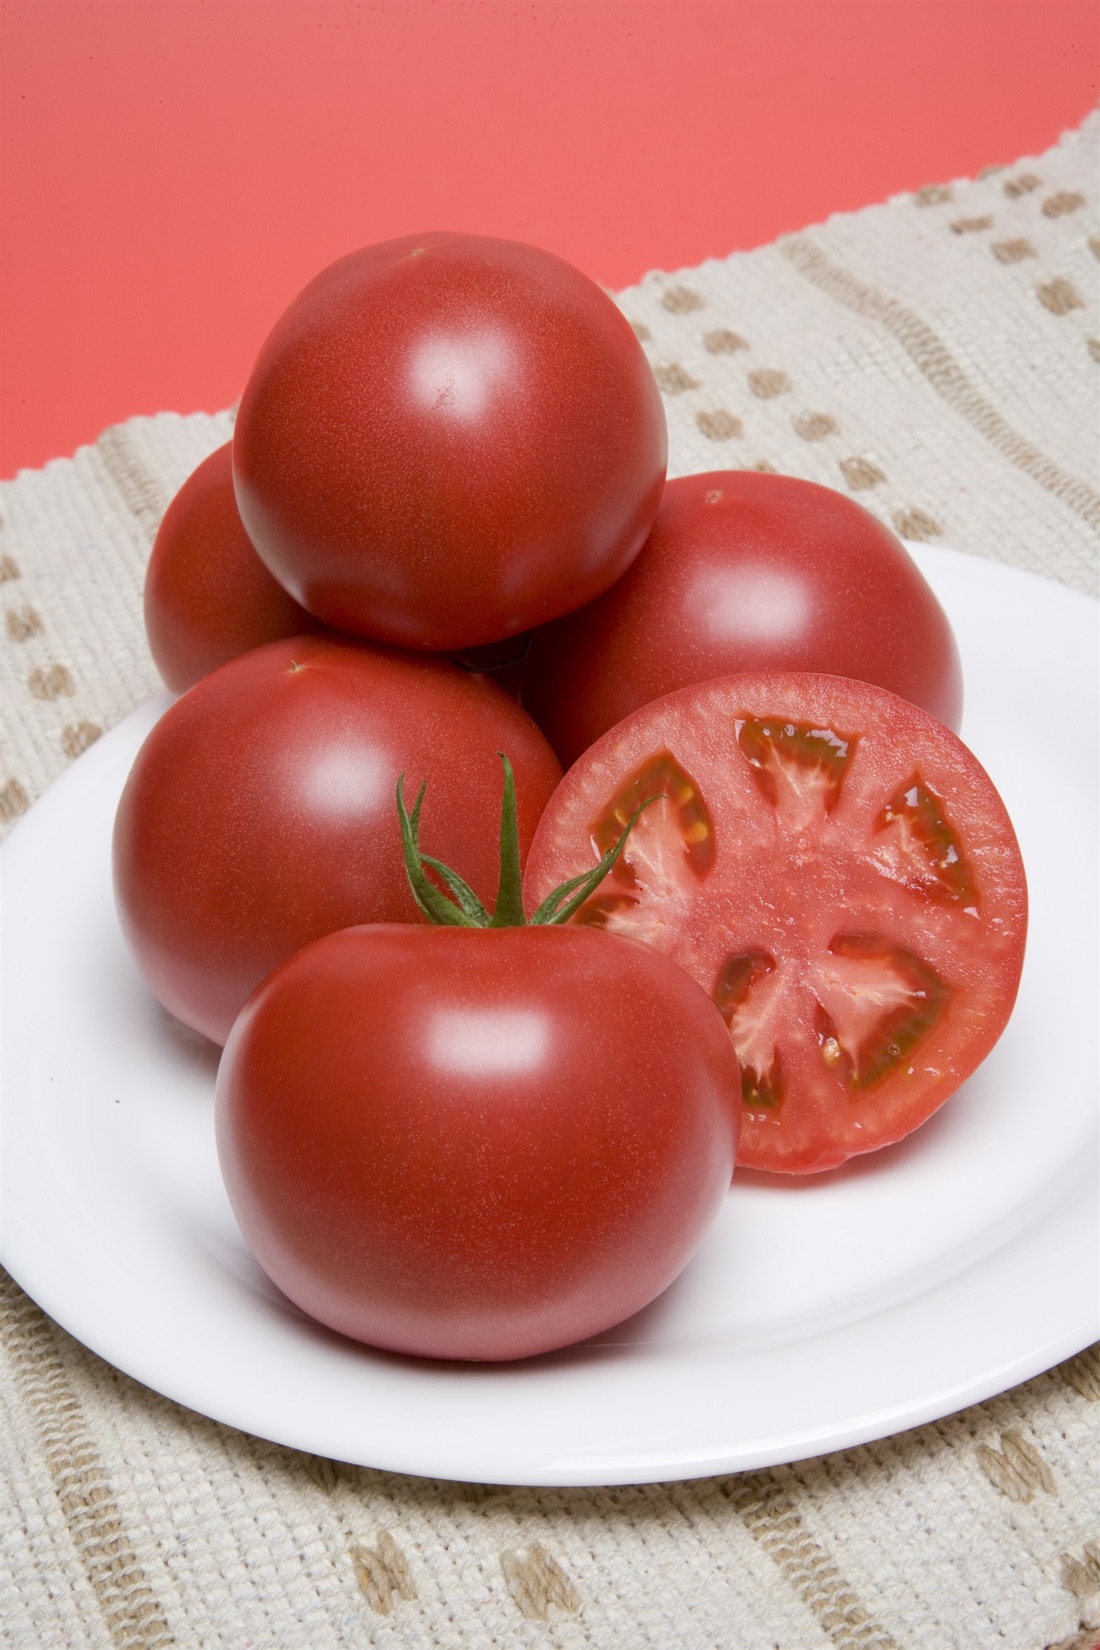 倉 蕃茄 トマト とまと タキイ交配 1000粒1センR 桃太郎ホープトマト 葉菜